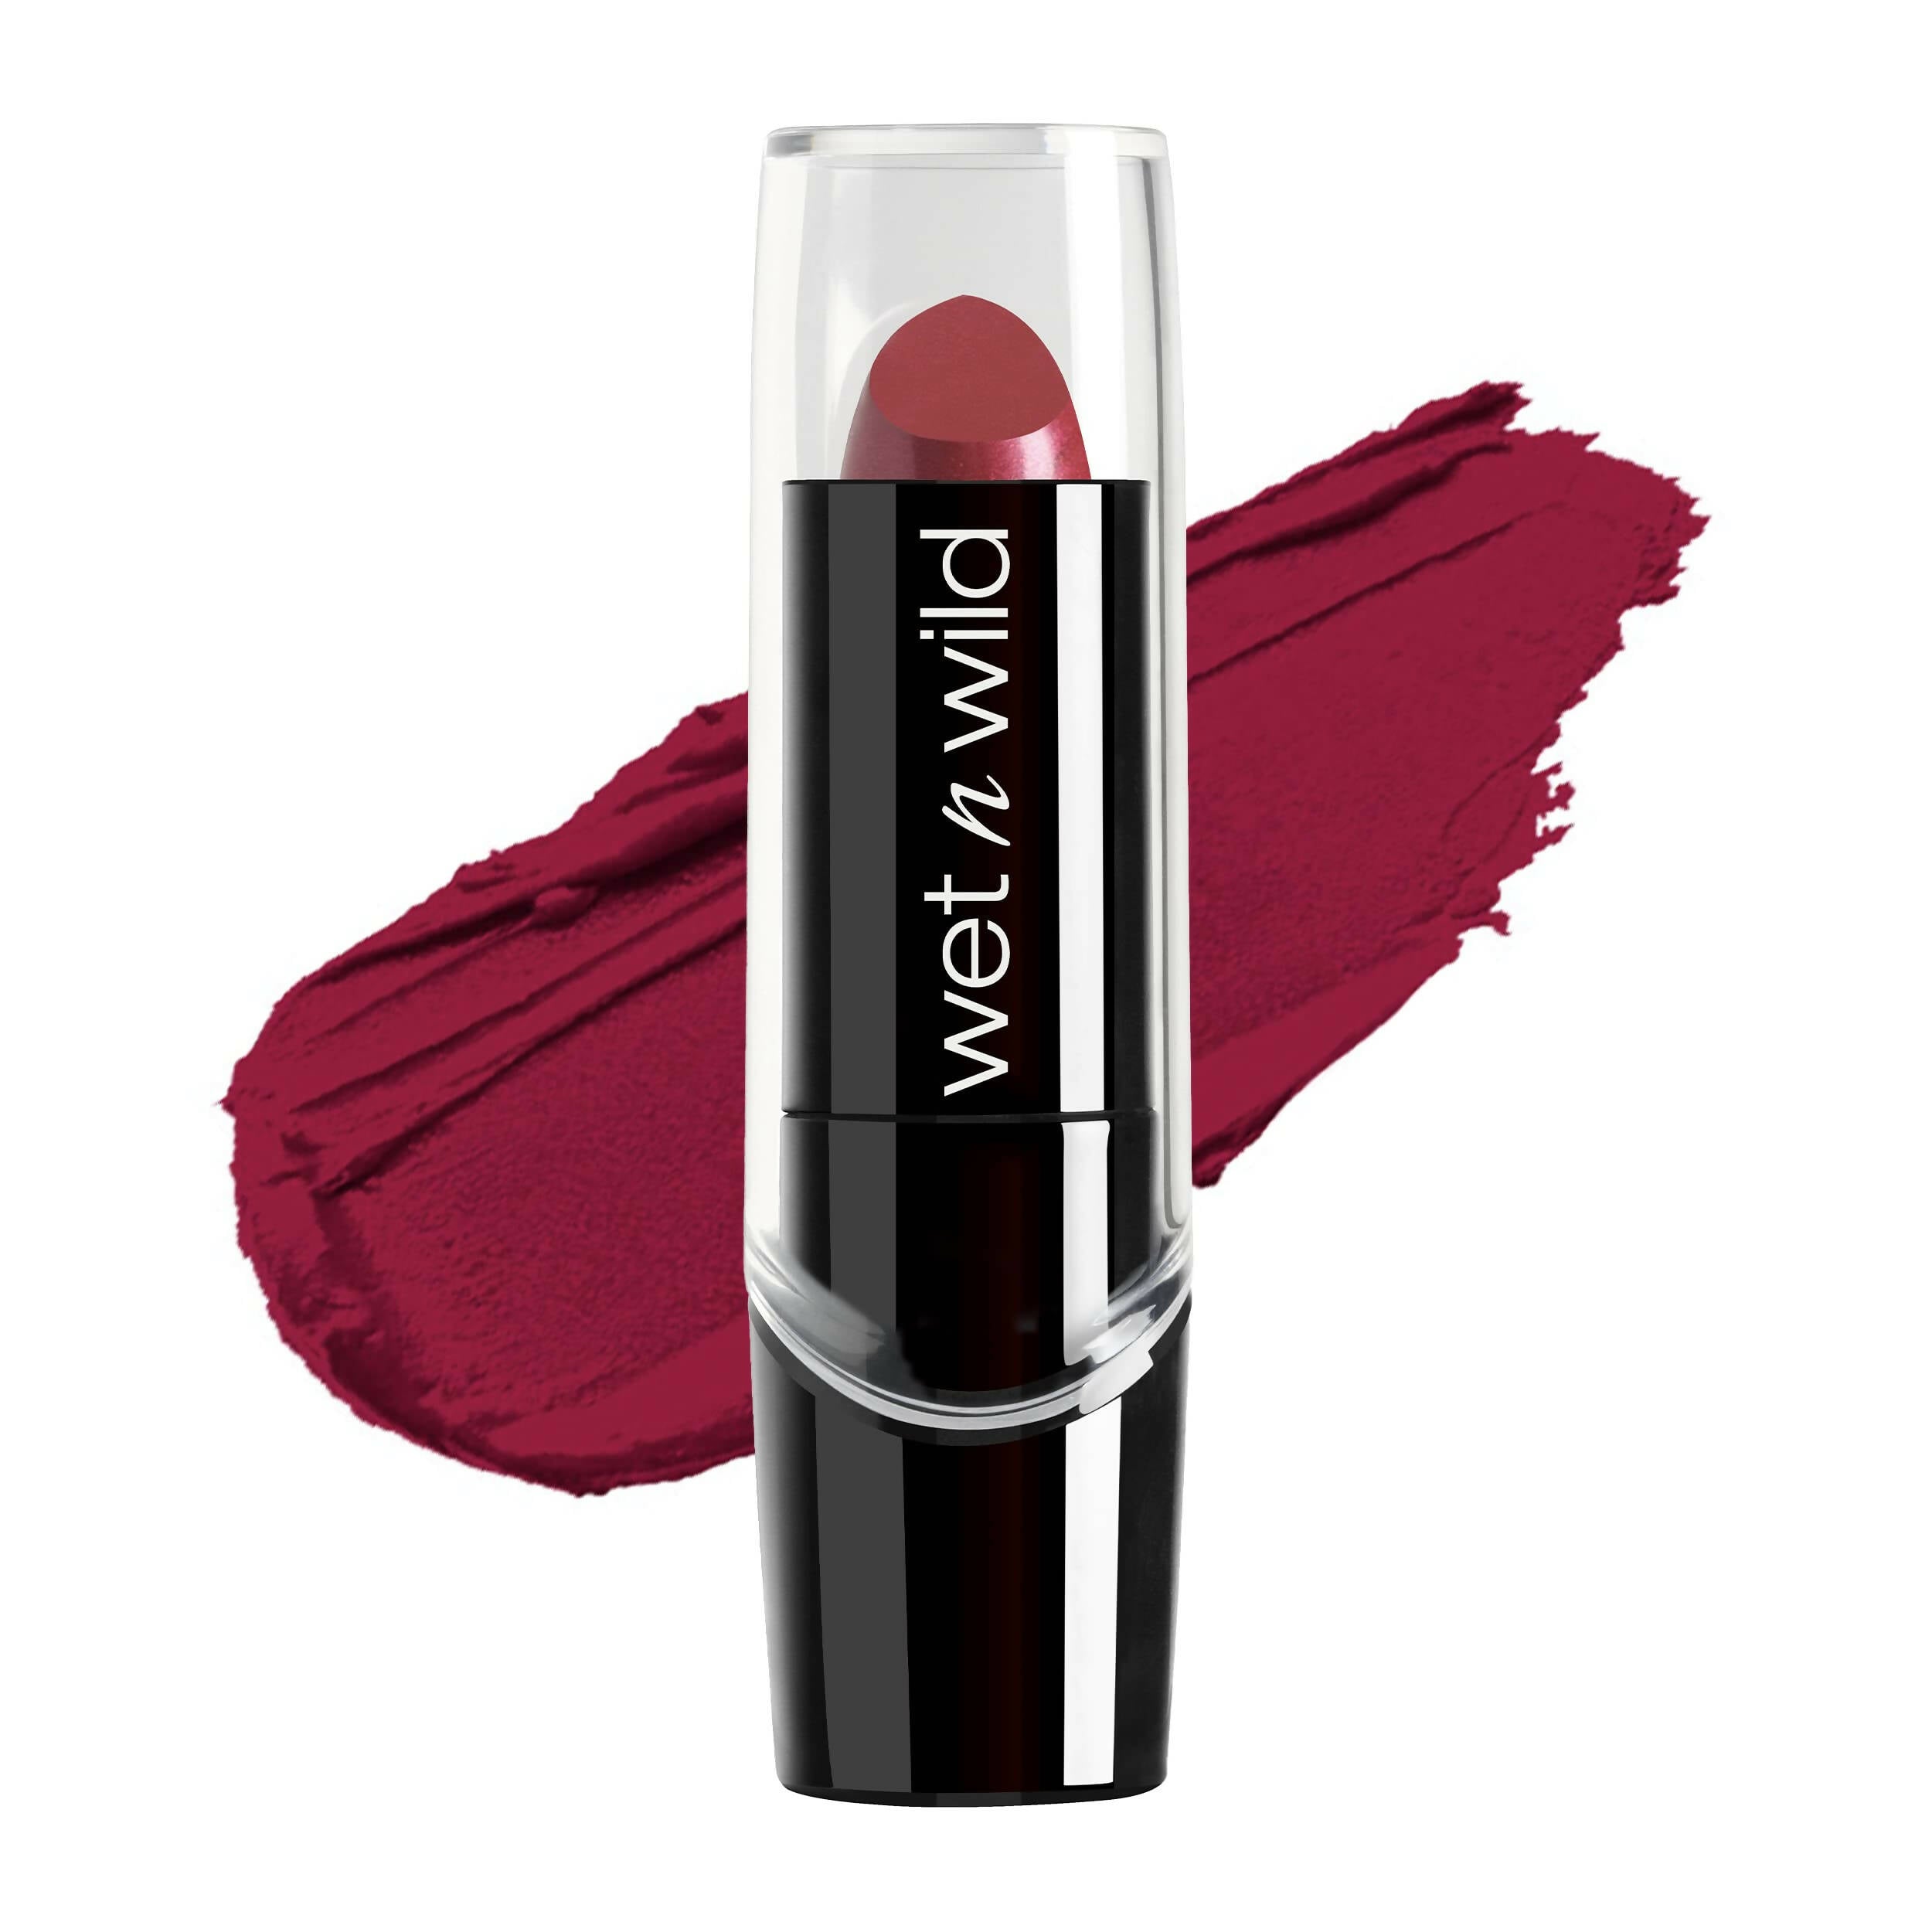 Wet n Wild | Lipstick Just Garnet | Women Beauty | Brand New